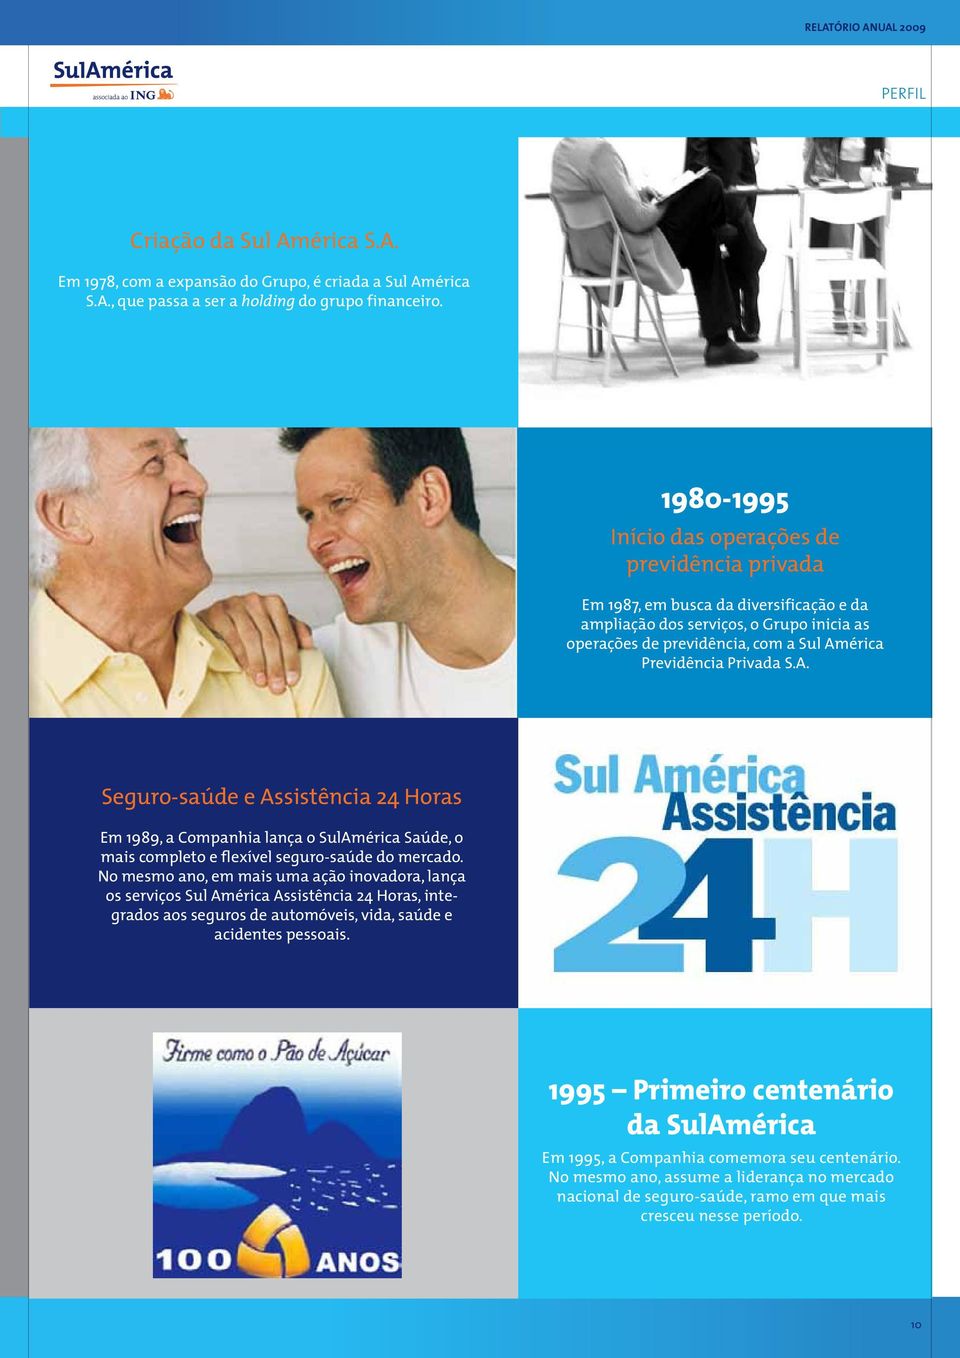 Privada S.A. Seguro-saúde e Assistência 24 Horas Em 1989, a Companhia lança o SulAmérica Saúde, o mais completo e flexível seguro-saúde do mercado.